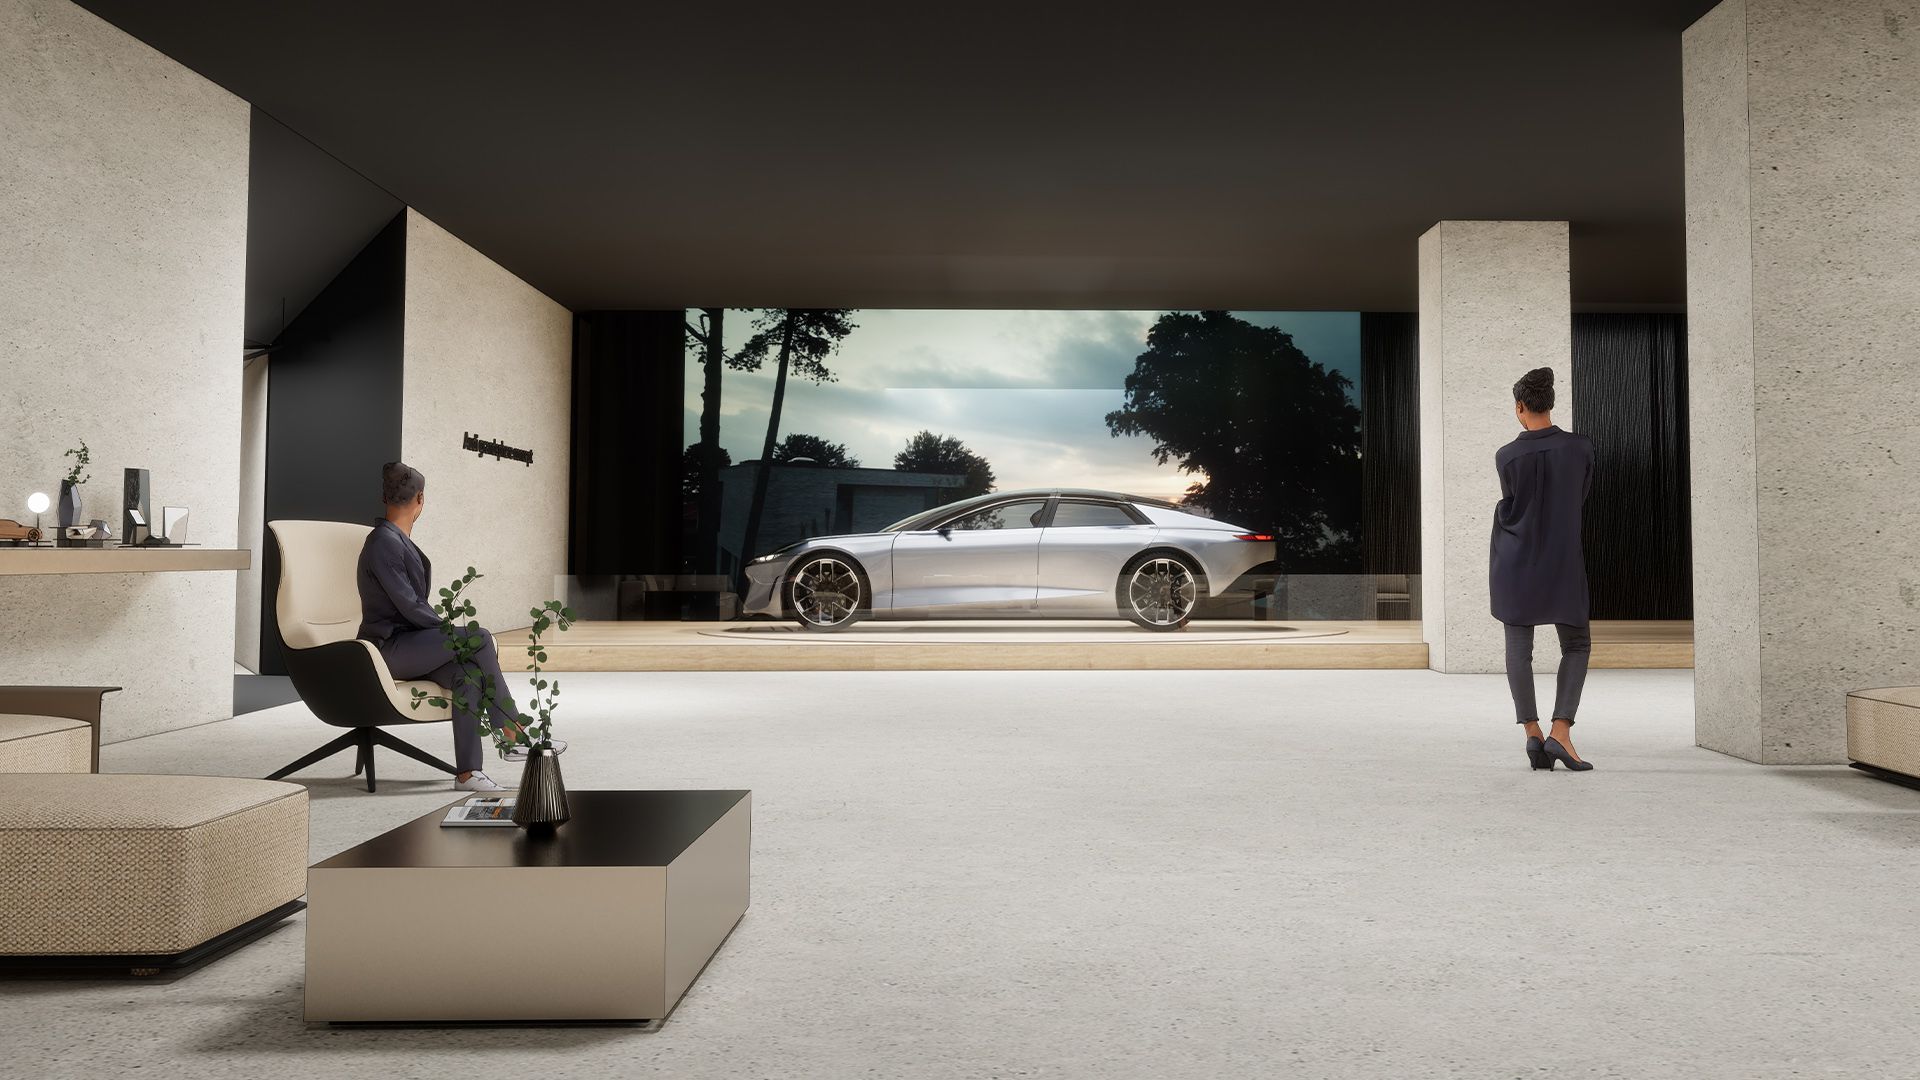 Lors de la semaine du design de Milan 2022, l'Audi grandsphere concept¹ illustrera la vision de la mobilité du futur et fait partie du concept « re-generate ».